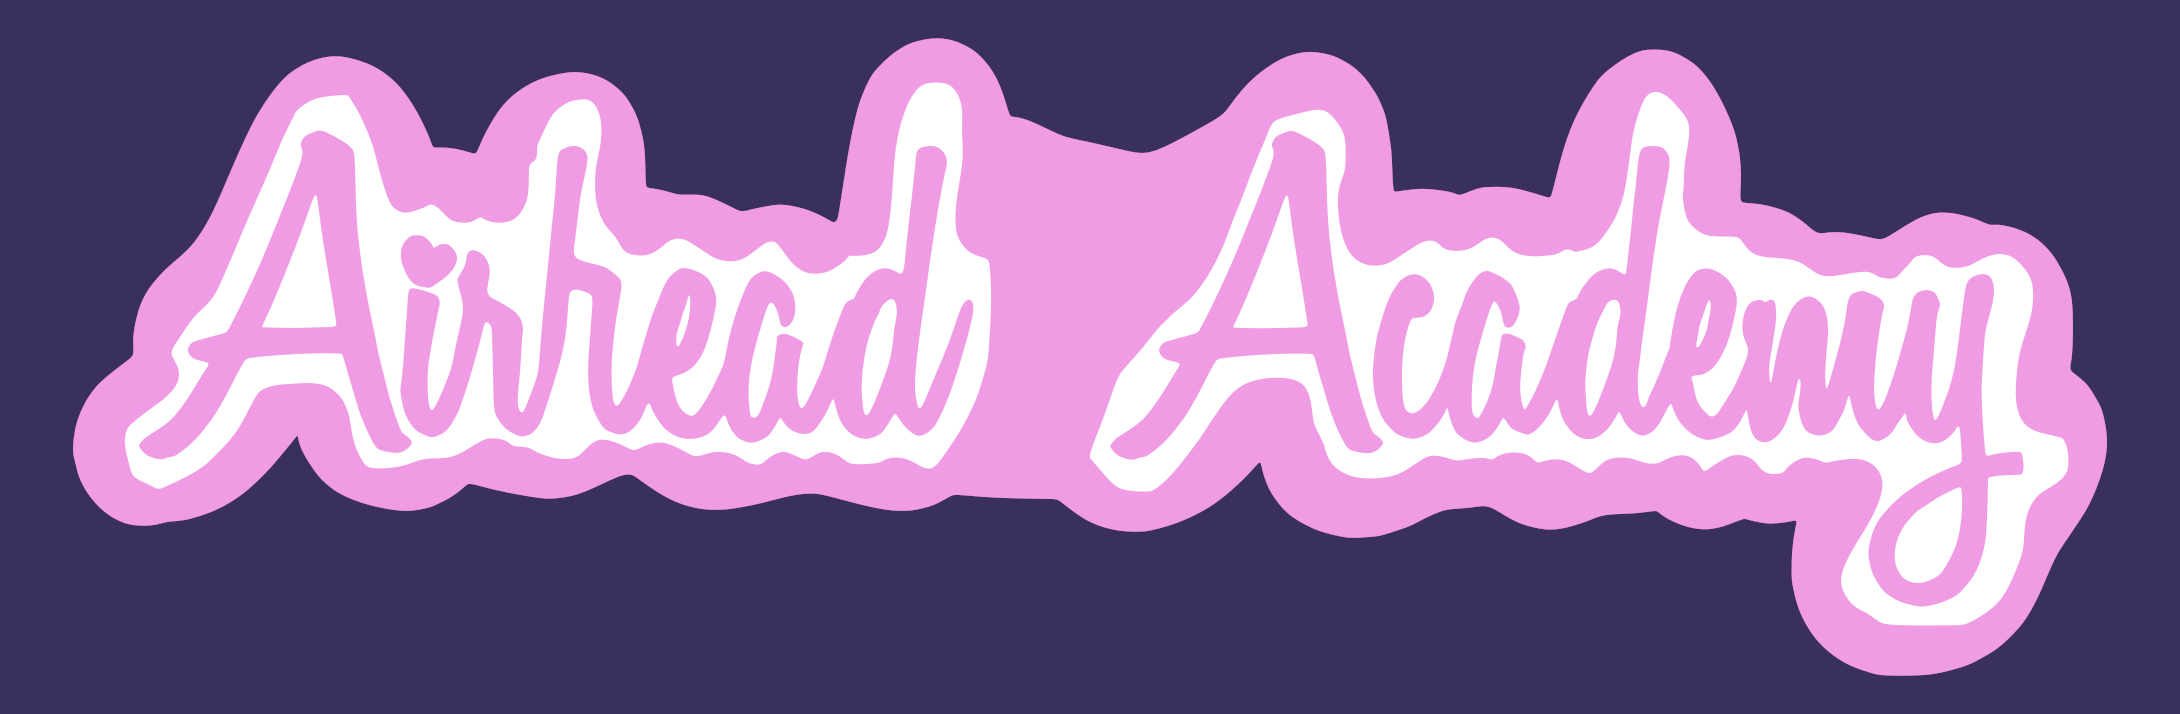 Airhead Academy (Web)